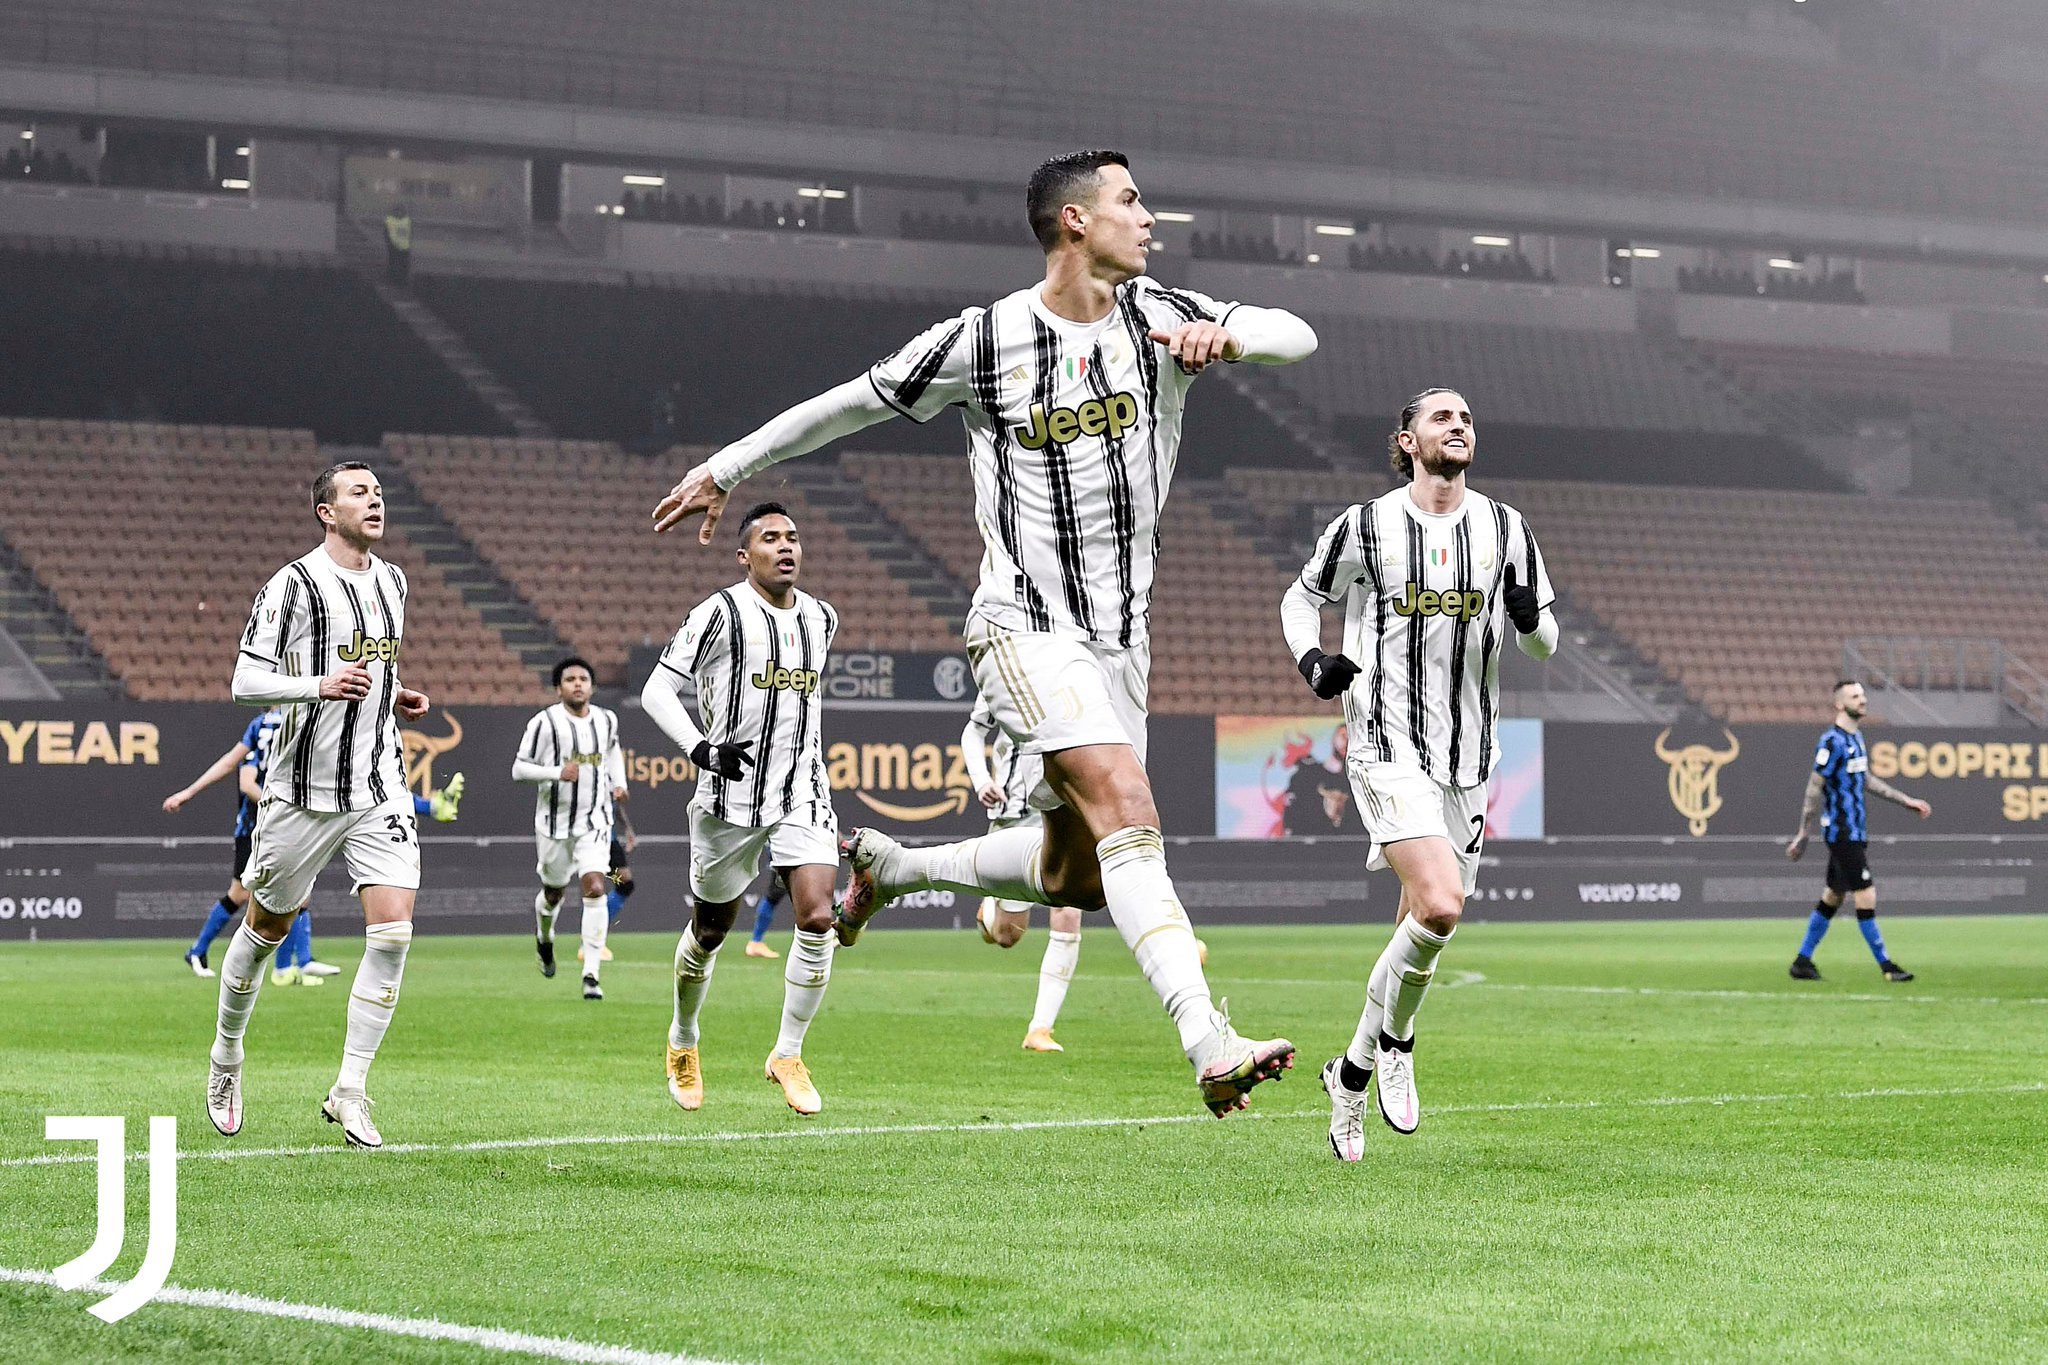 Një derbi plot me gola! Juventus kalon në avantazh që në pjesën e parë